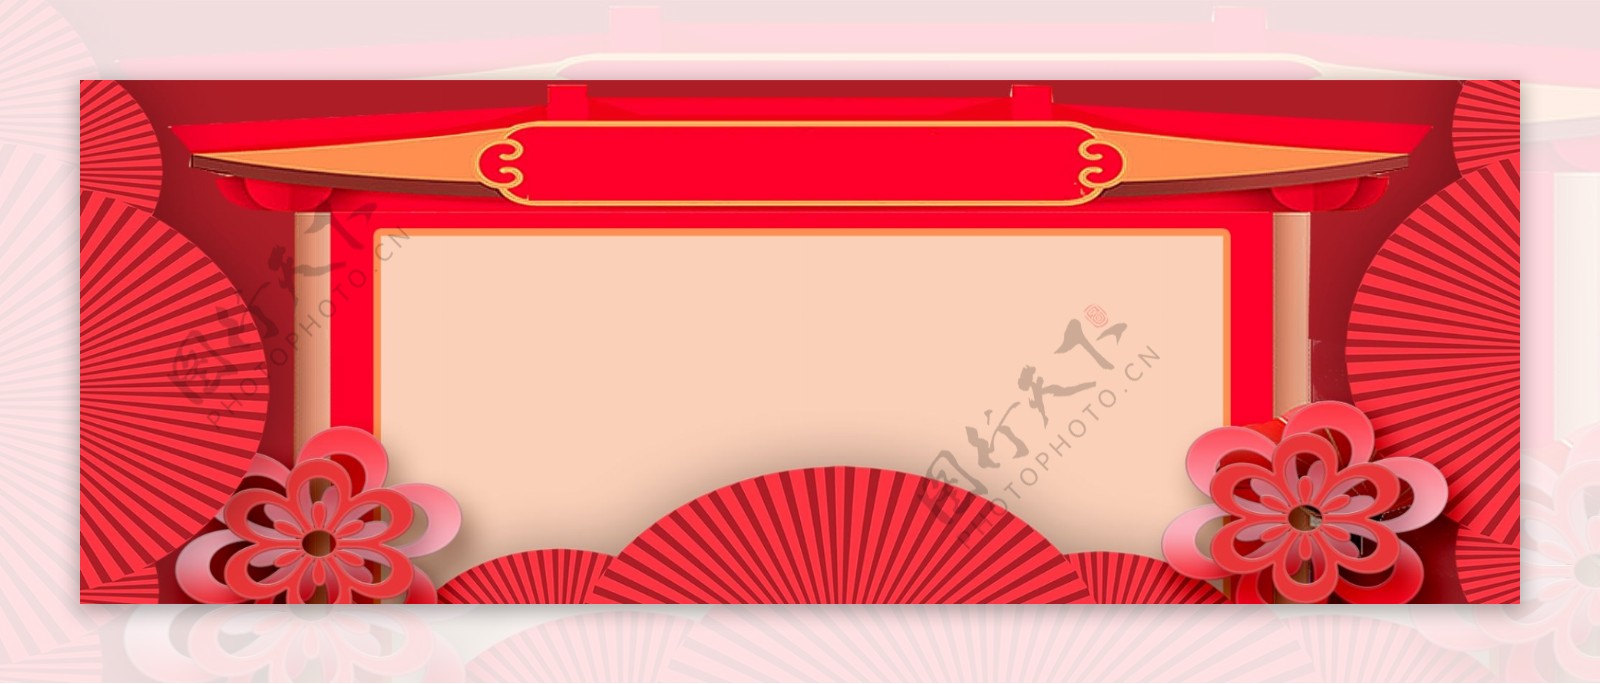 古典大气节日节庆红色背景